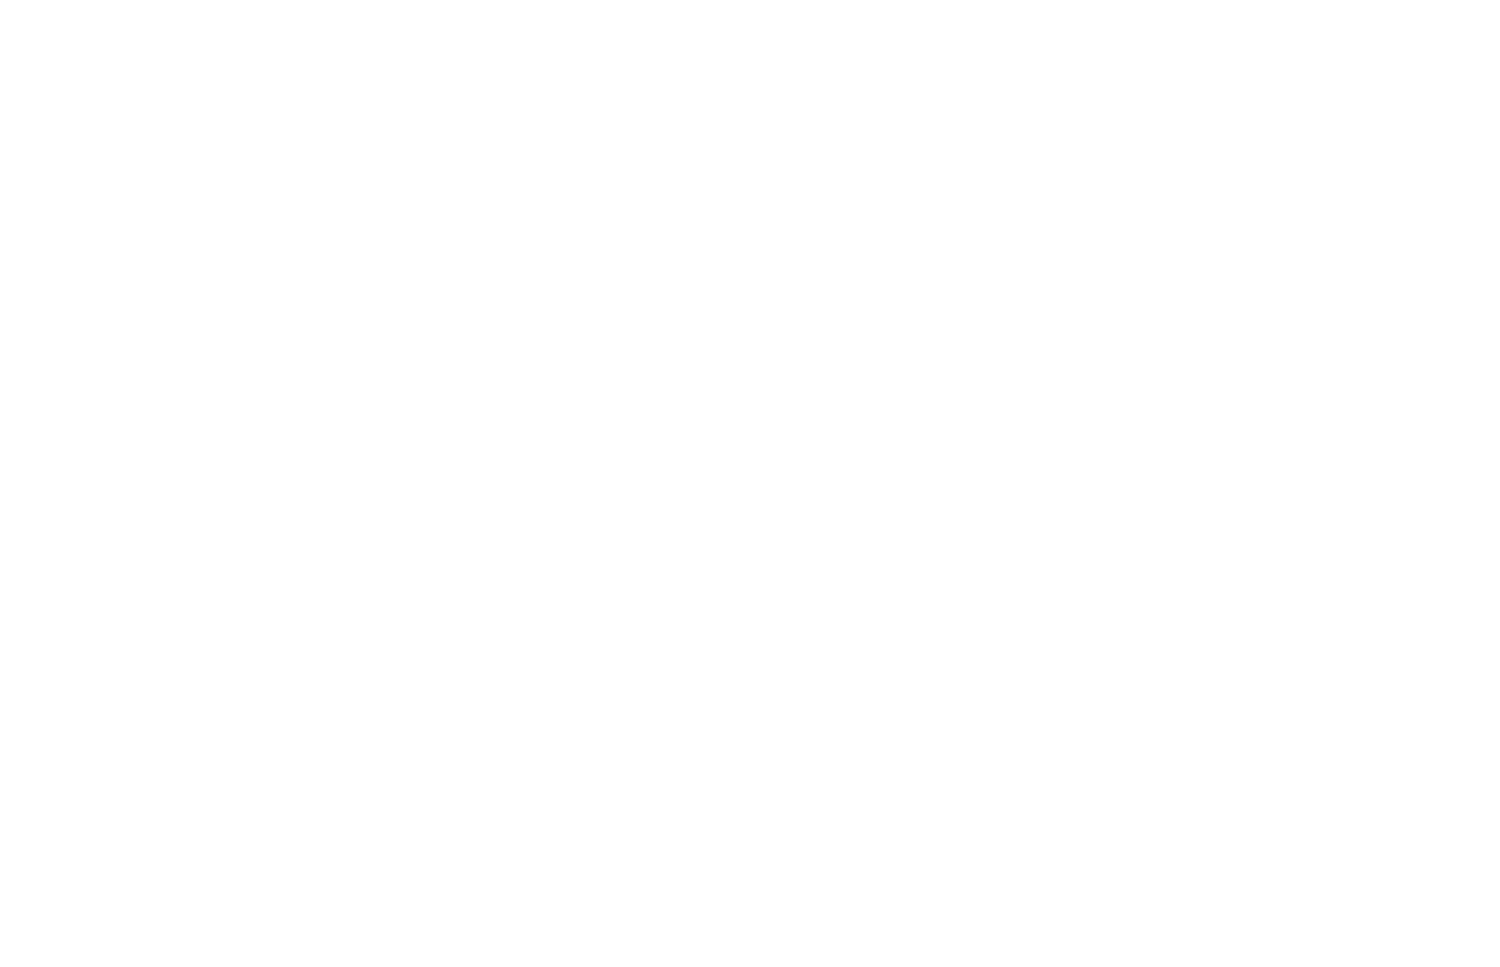 Delay lay lay